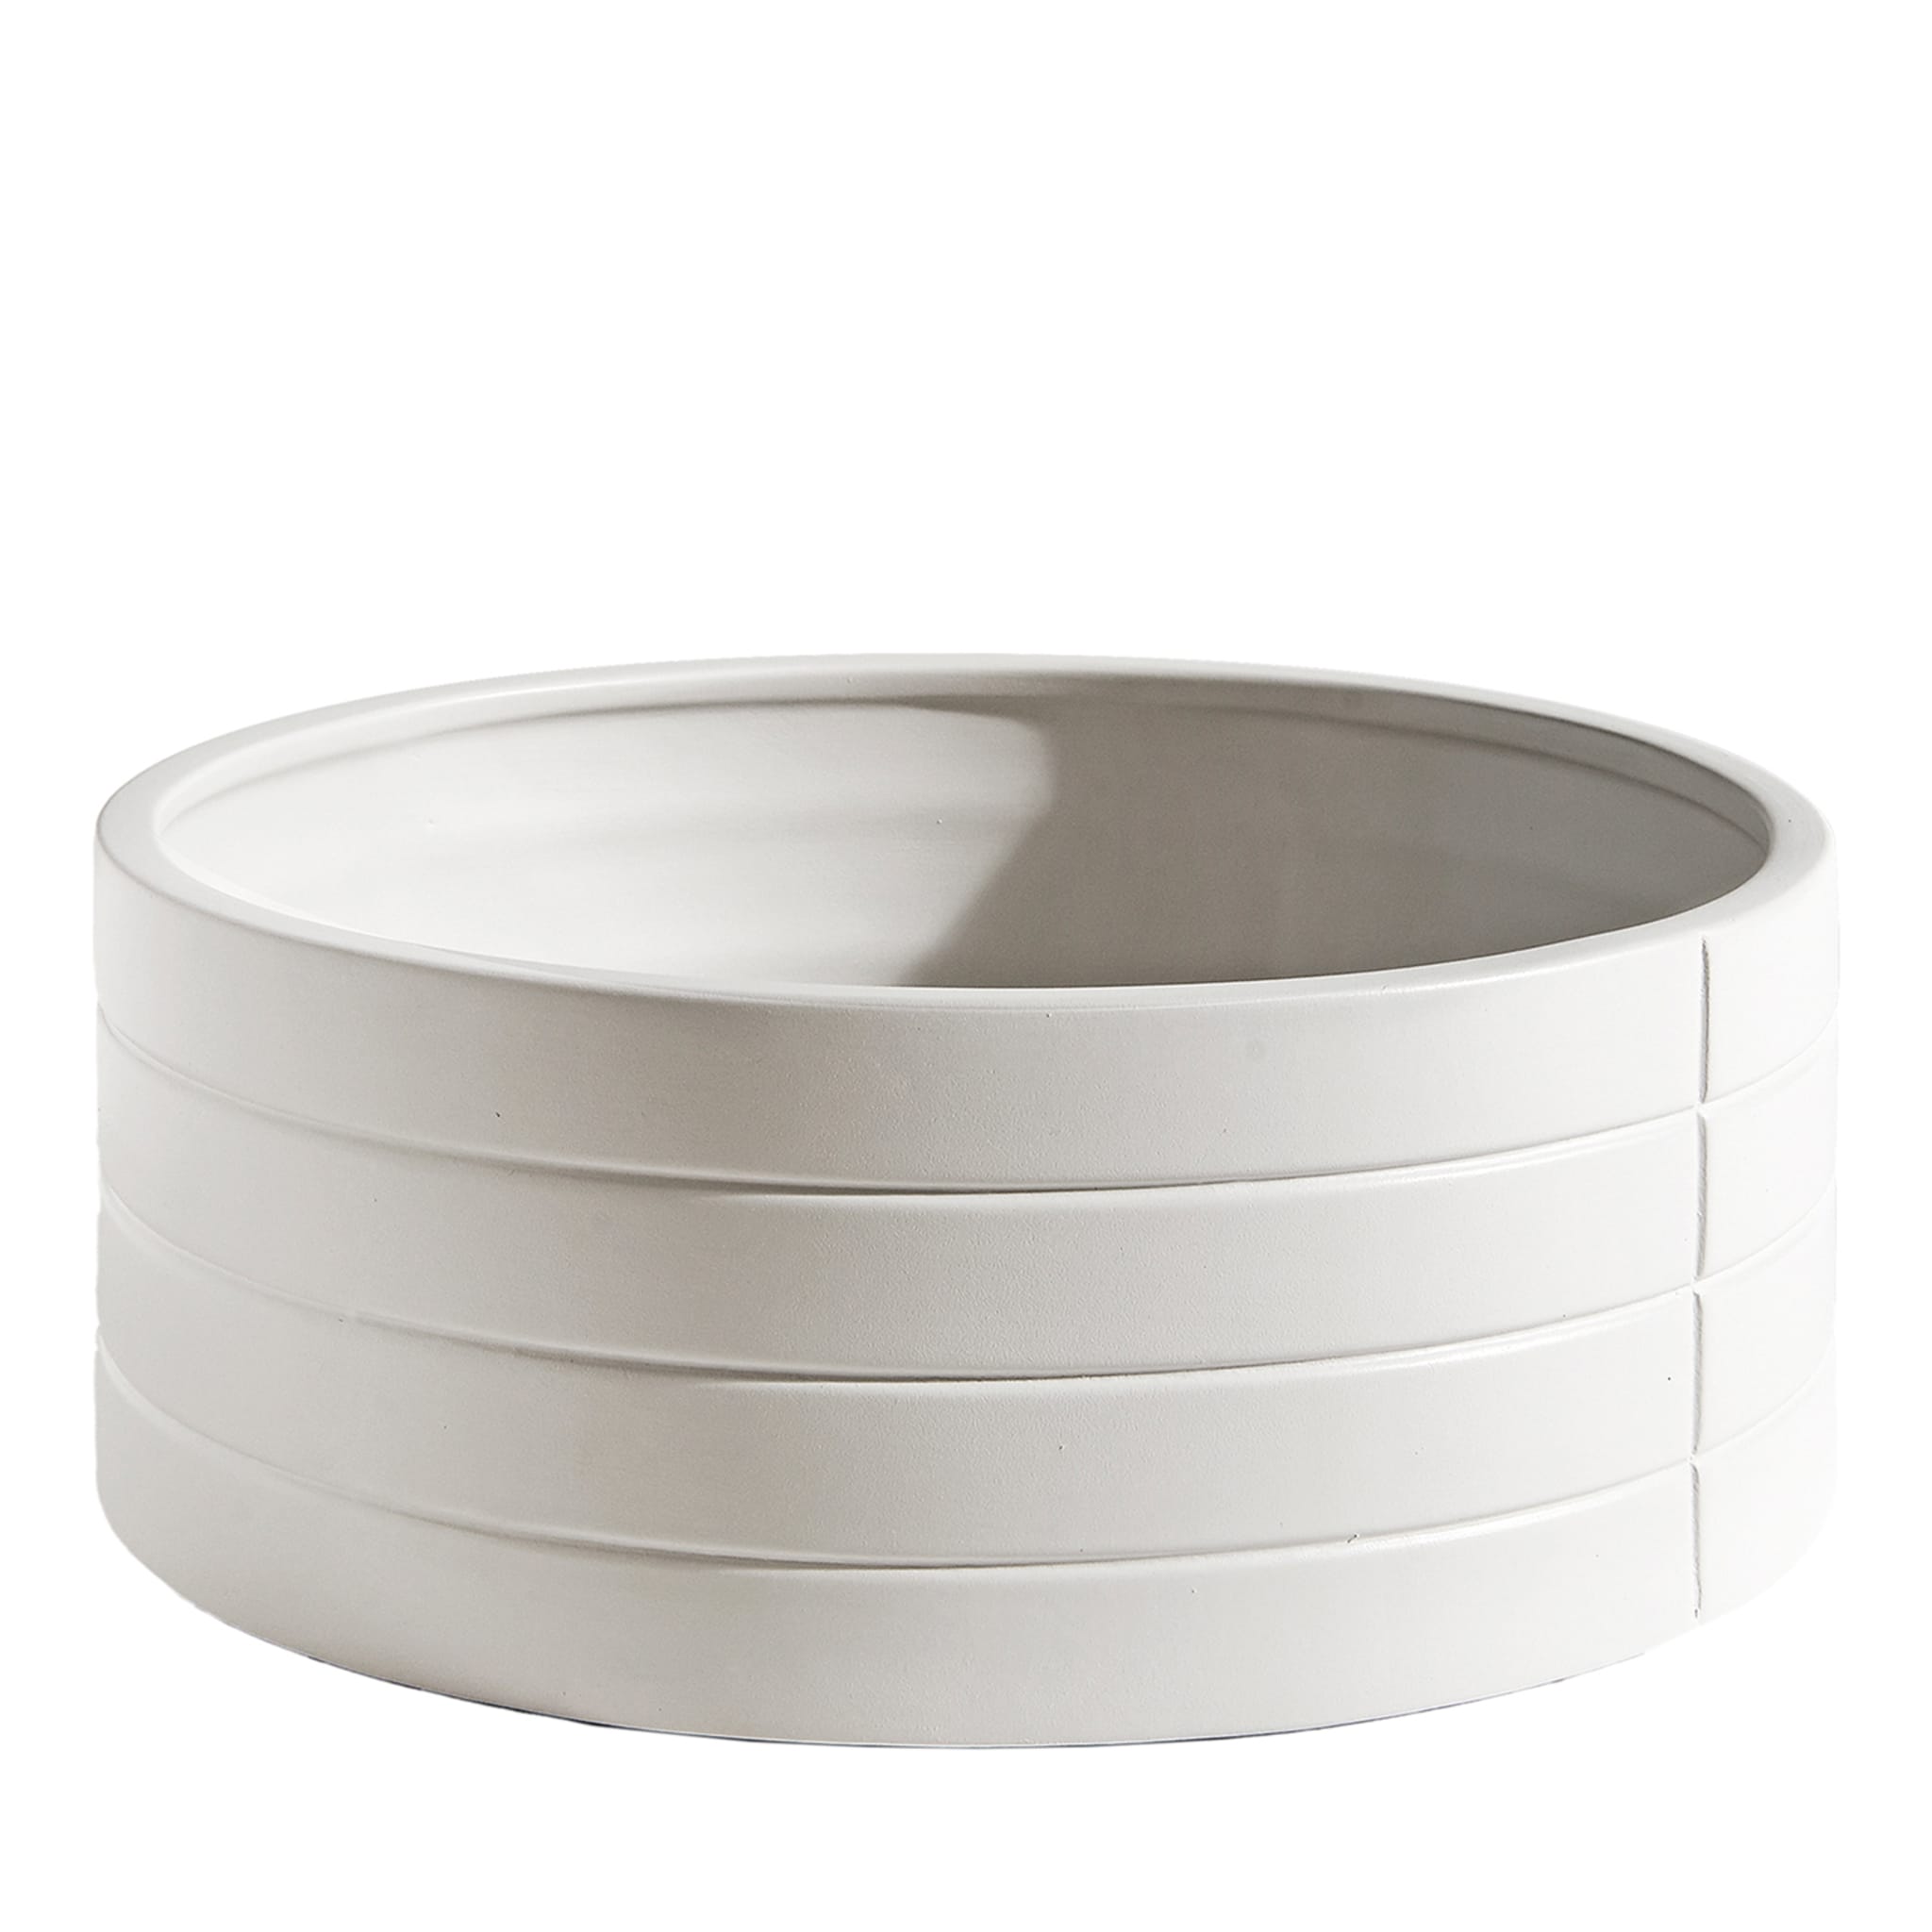 Rikuadra Weiße Keramik-Vase #1 - Hauptansicht